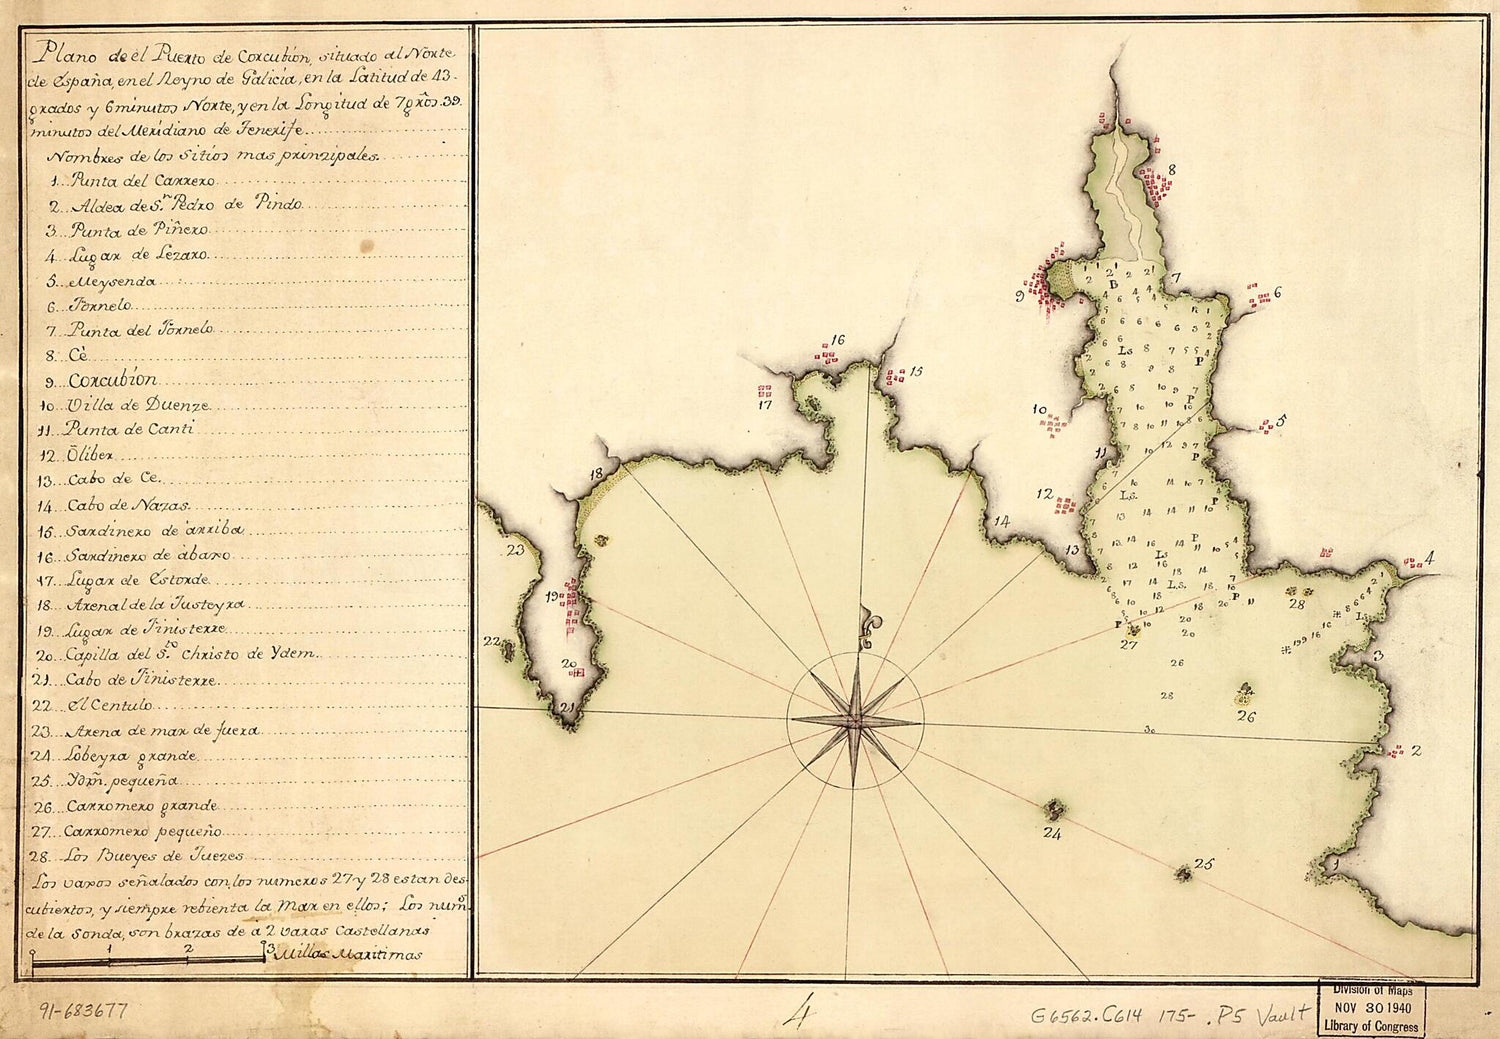 This old map of Plano De El Puerto De Corcubión Situado Al Norte De España En El Reyno De Galicia En La Latitud De 43 Grados Y 6 Minutos Norte Y En La Longitud De 7 Gros. 39 Minutos Del Meridiano De Tenerife from 1750 was created by  in 1750